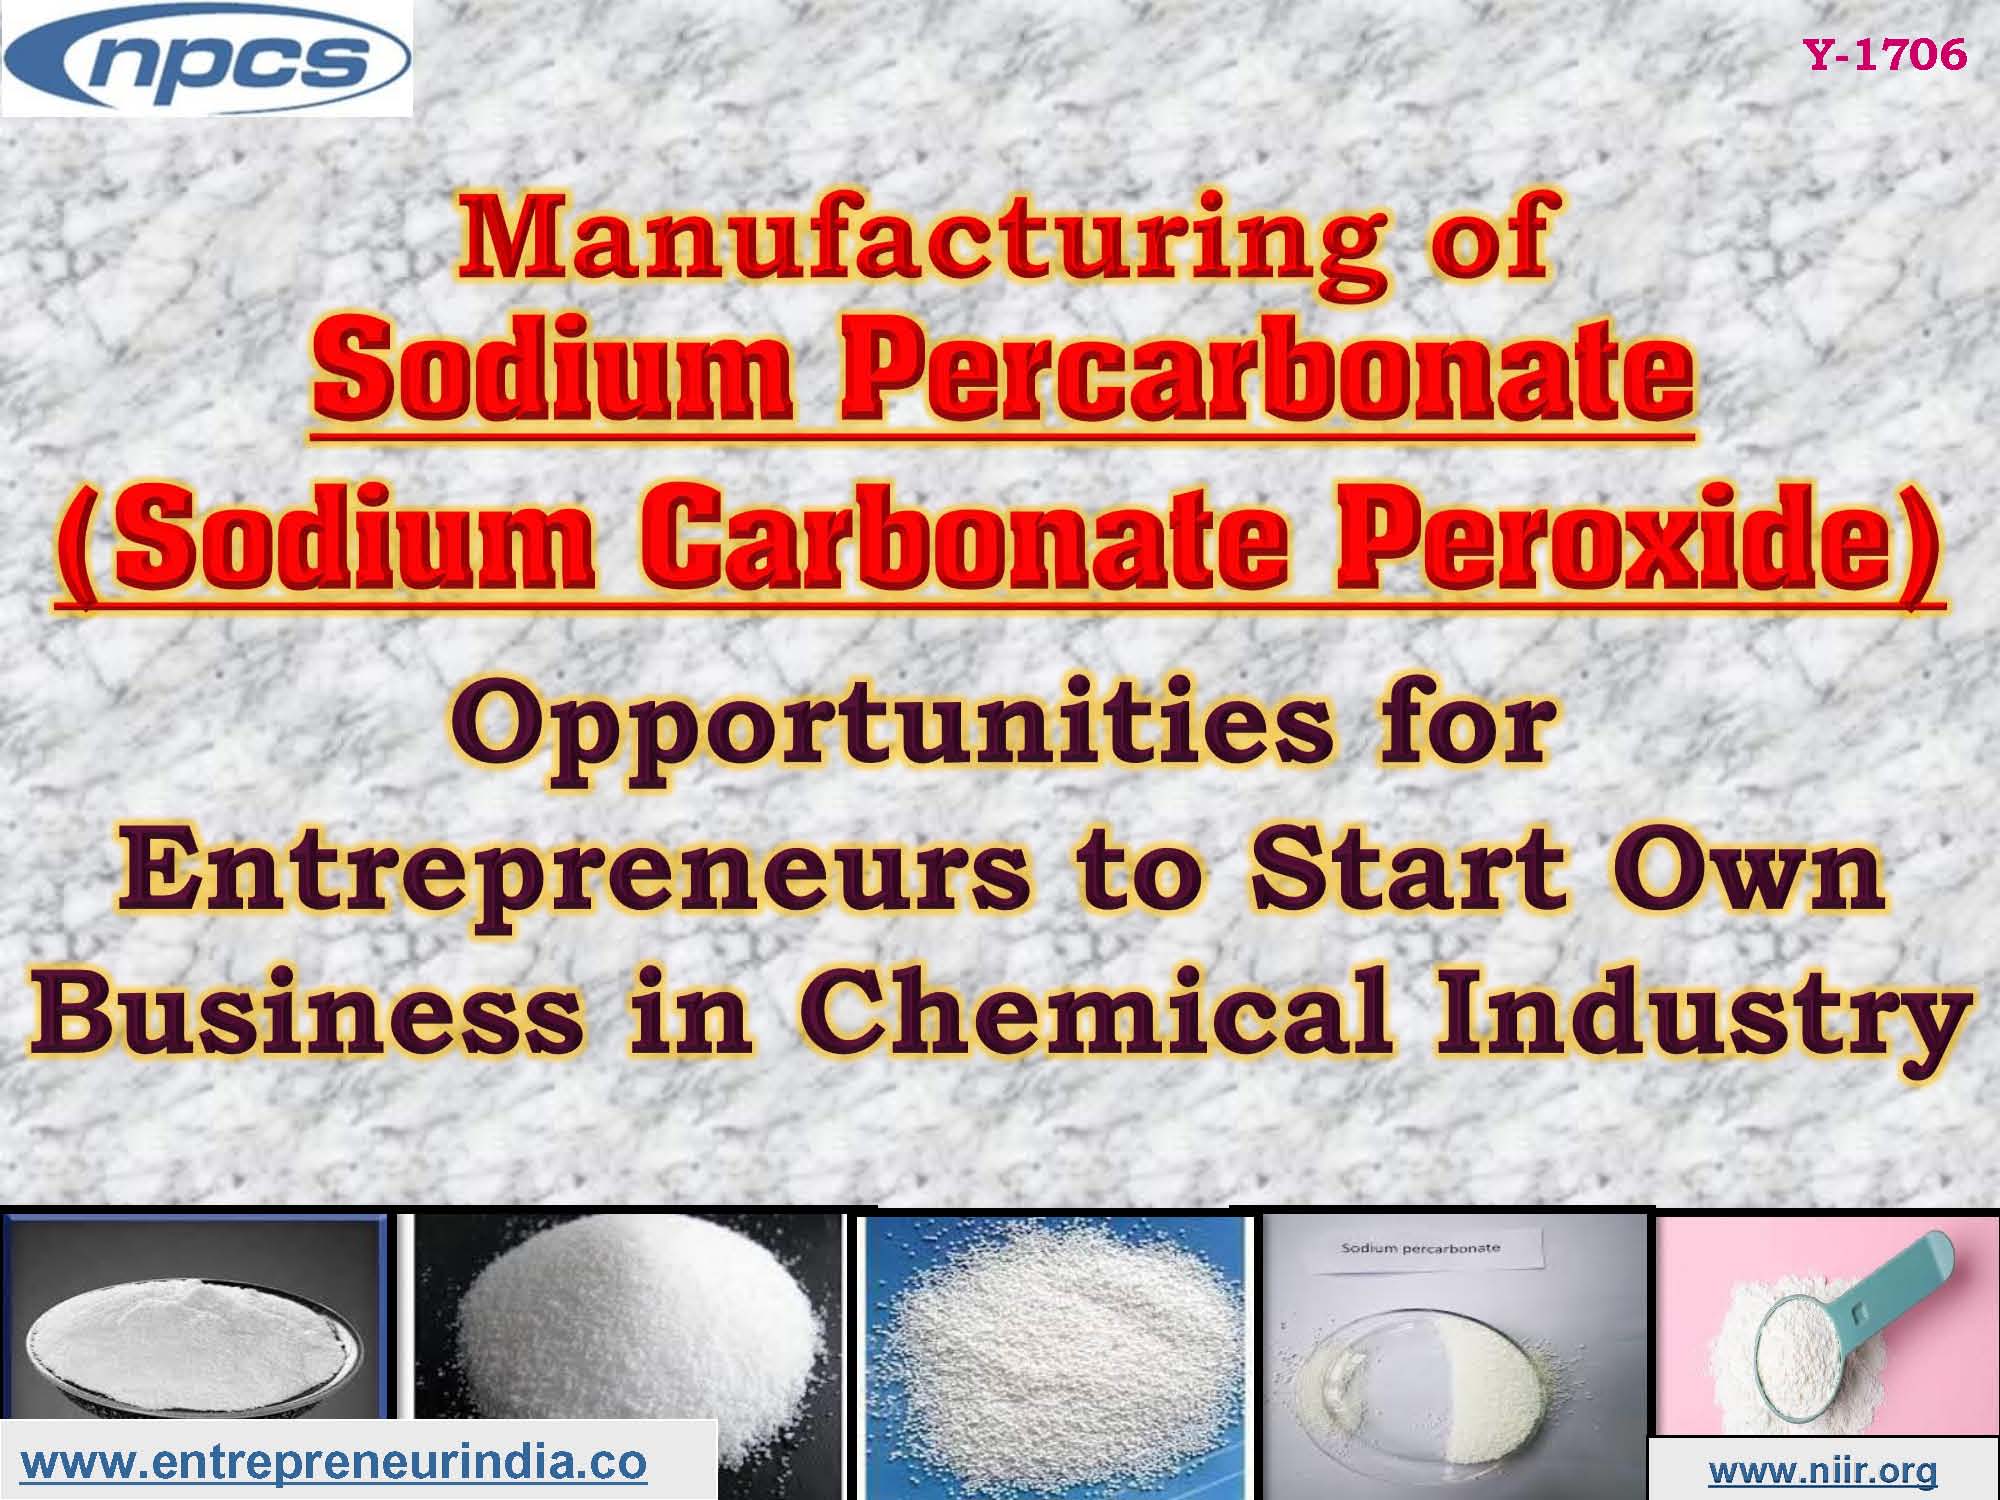 Production of Sodium Percarbonate (Sodium Carbonate Peroxide)